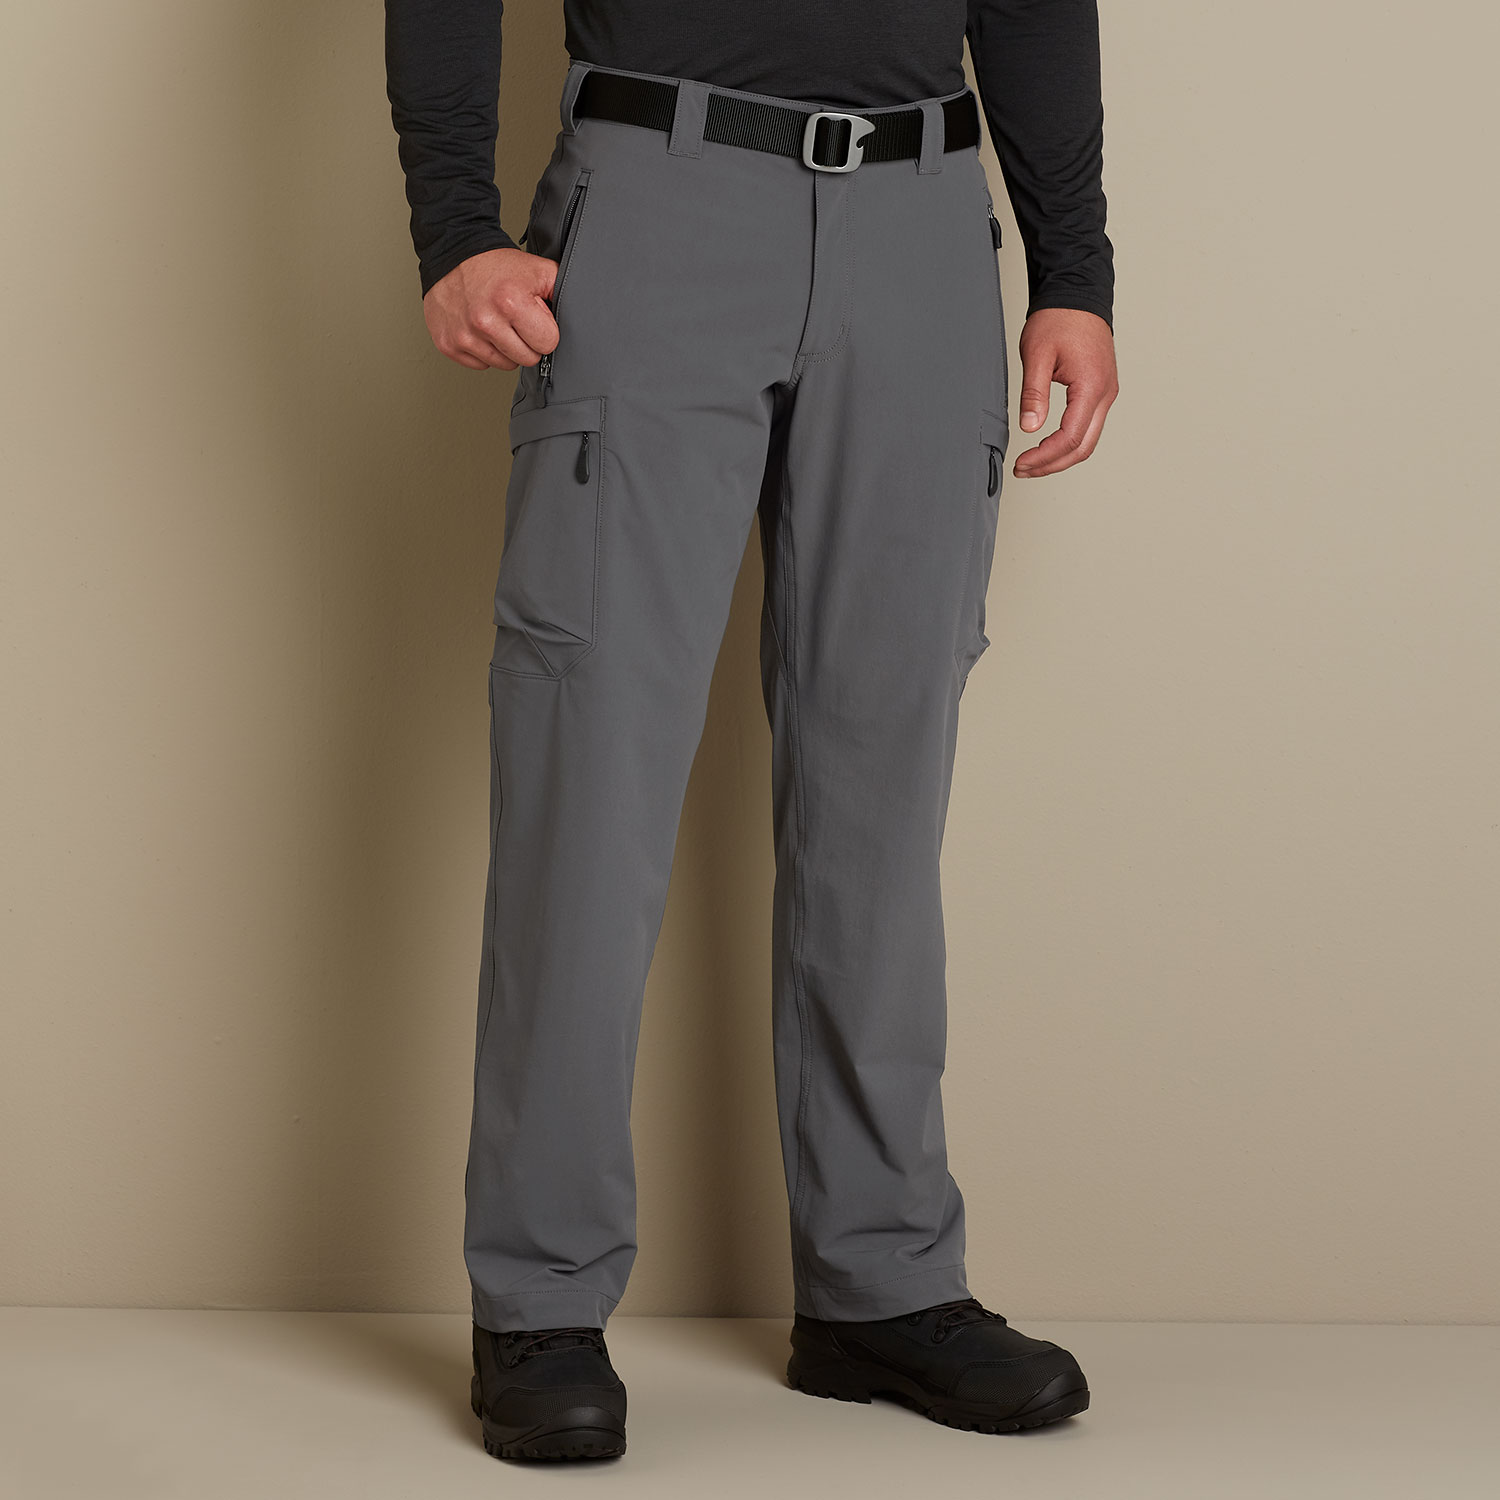 Men's Cargo Pants Turn Refined for Spring - WSJ